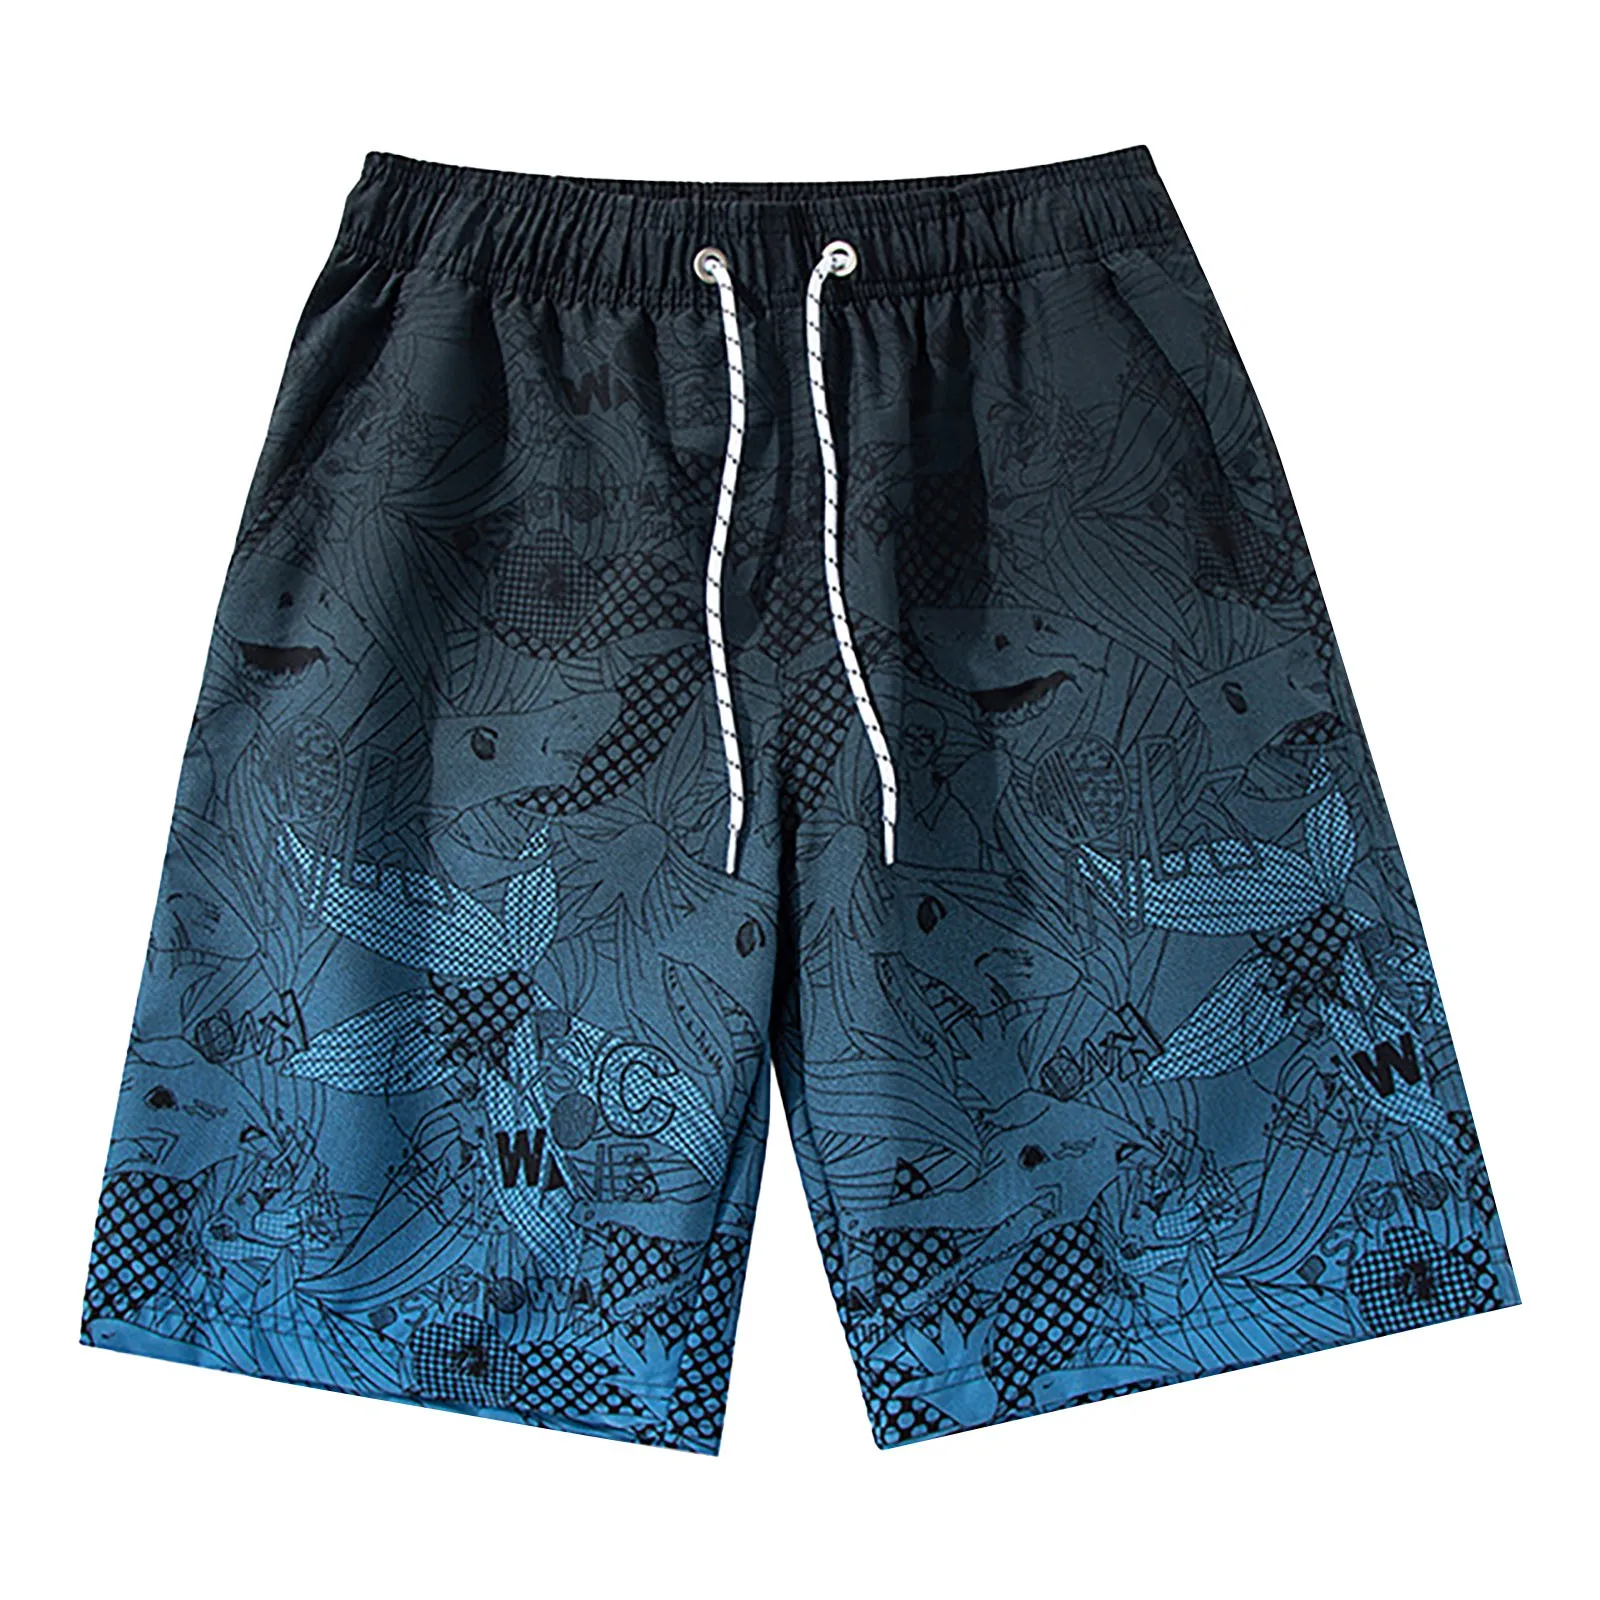 Мъжки бански с мрежесто покритие, шорти за плуване, летни плажни шорти в синьо